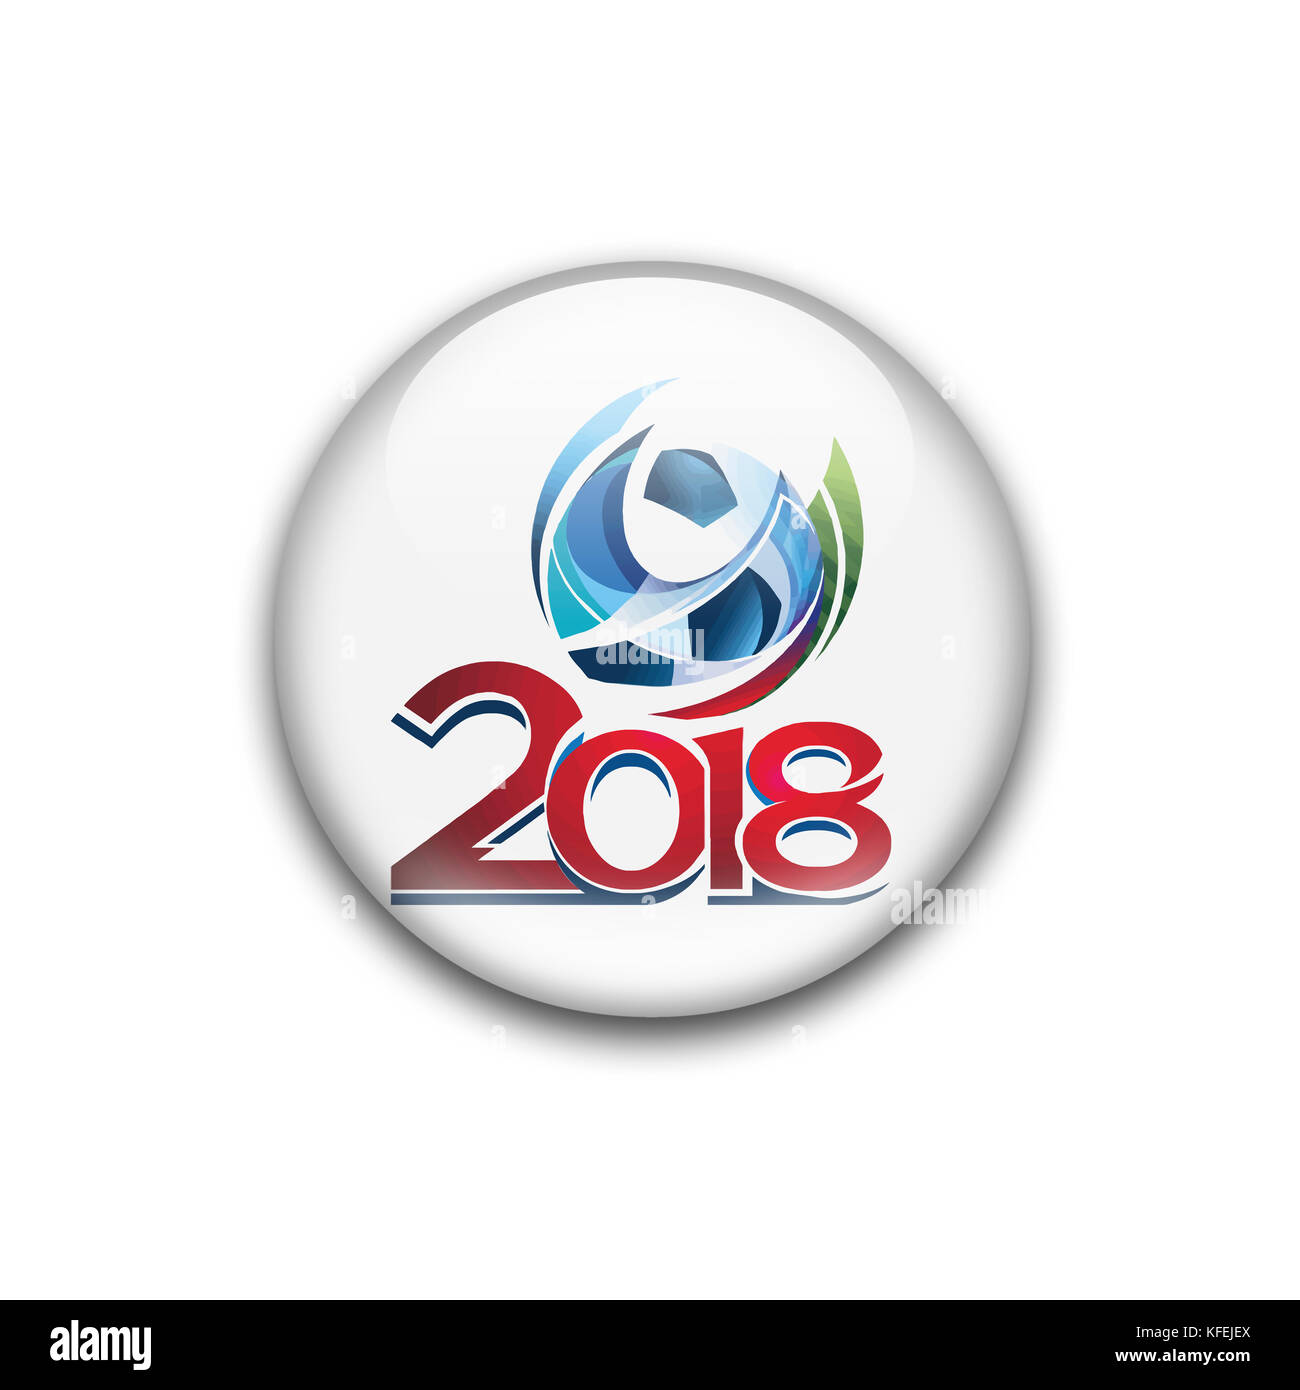 La Russia 2018 FIFA World Cup logo Foto Stock